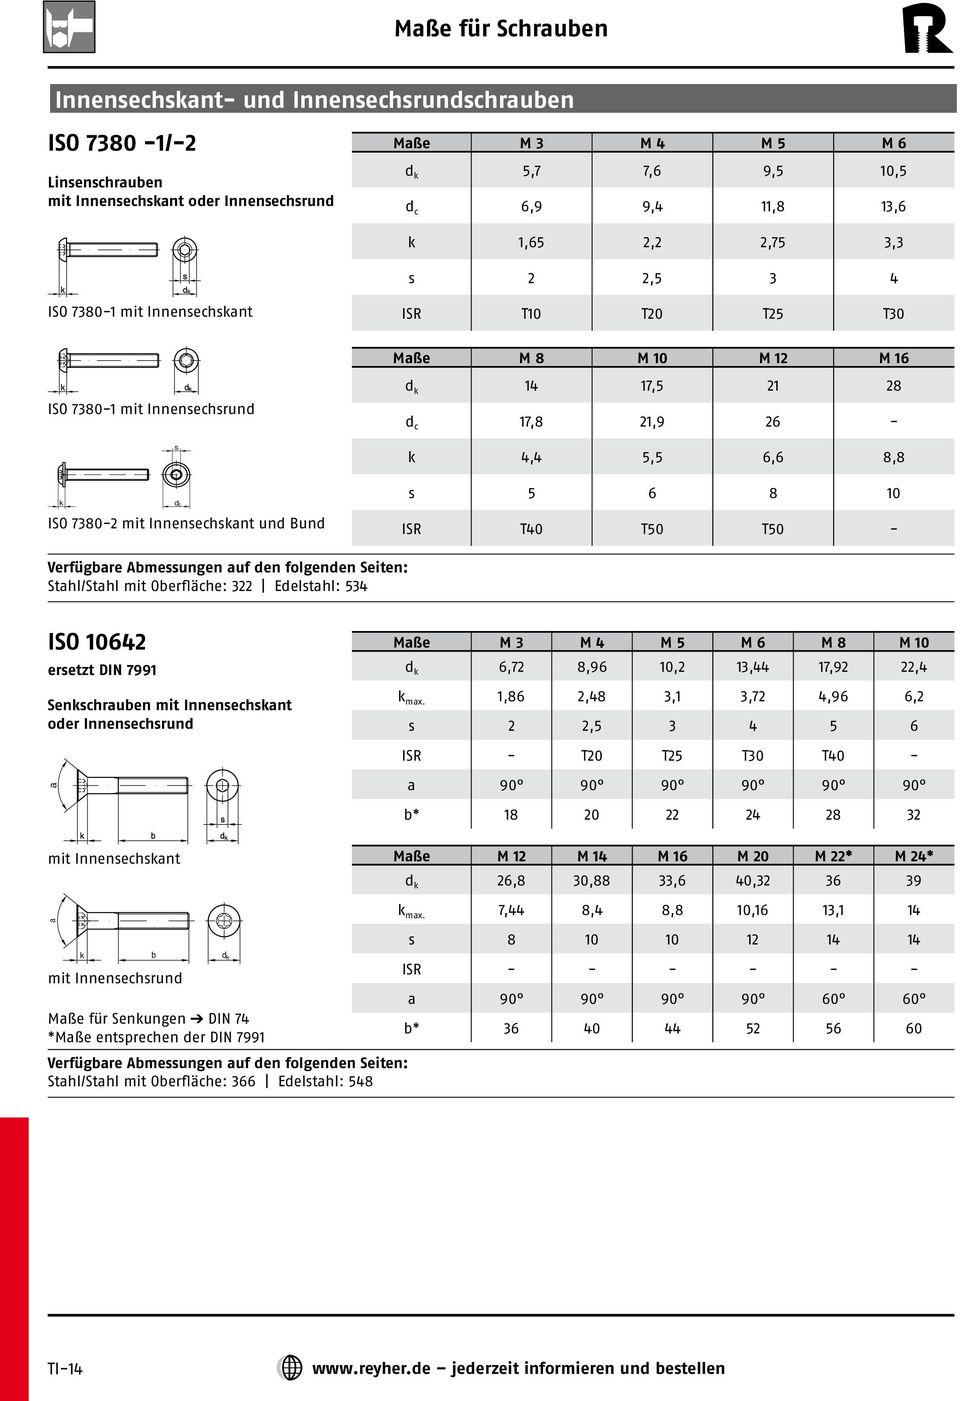 T40 T50 T50 - Stahl/Stahl mit Oberfläche: 322 Eeltahl: 534 ISO 10642 eretzt DIN 7991 Senchrauben mit Innenechant oer Innenechrun Maße M 3 M 4 M 5 M 6 M 8 M 10 6,72 8,96 10,2 13,44 17,92 22,4 max.